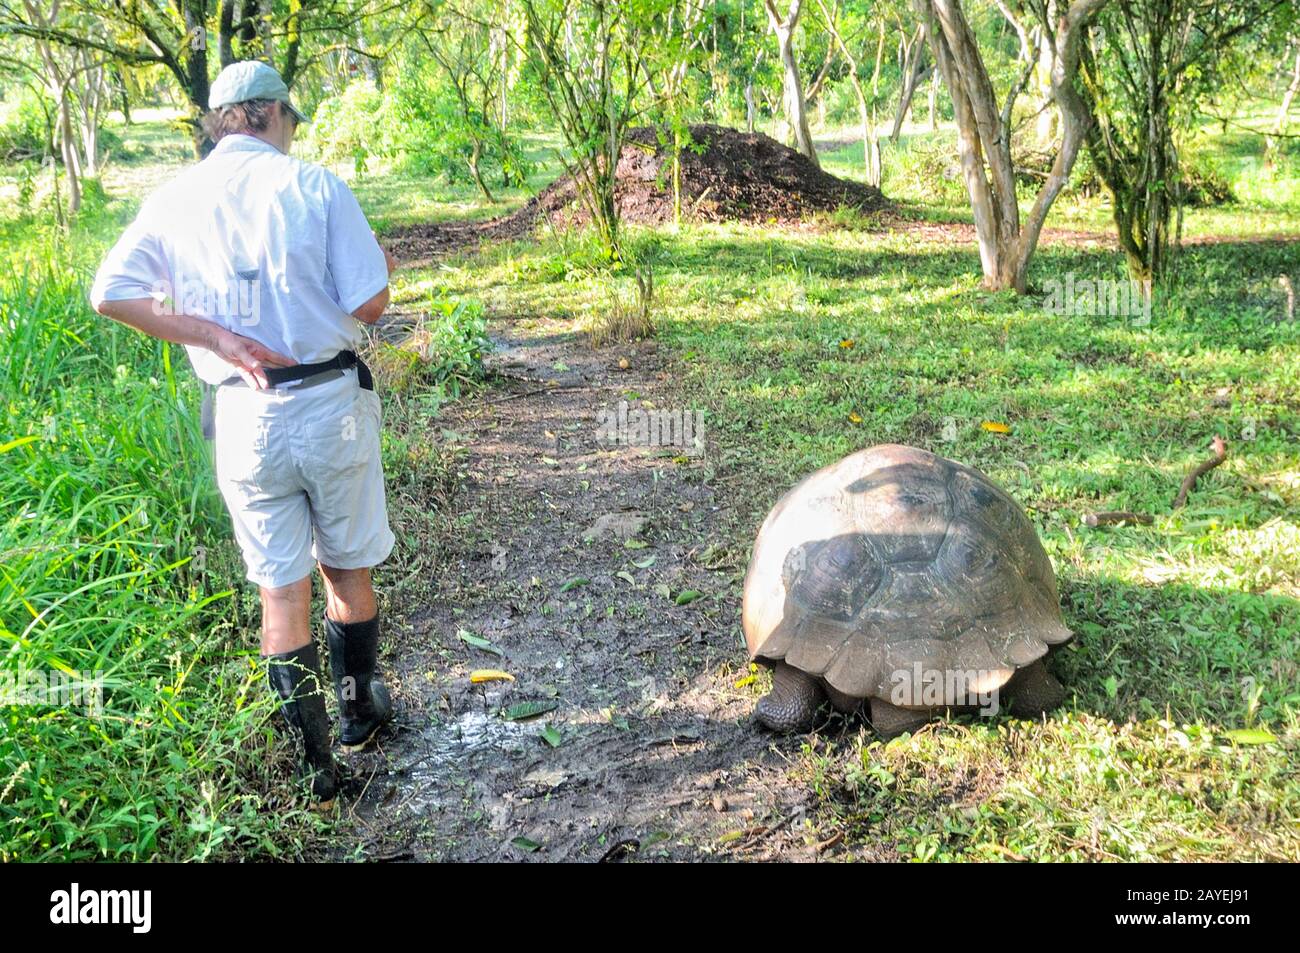 Größenvergleich Schildkröte Mensch Stockfoto